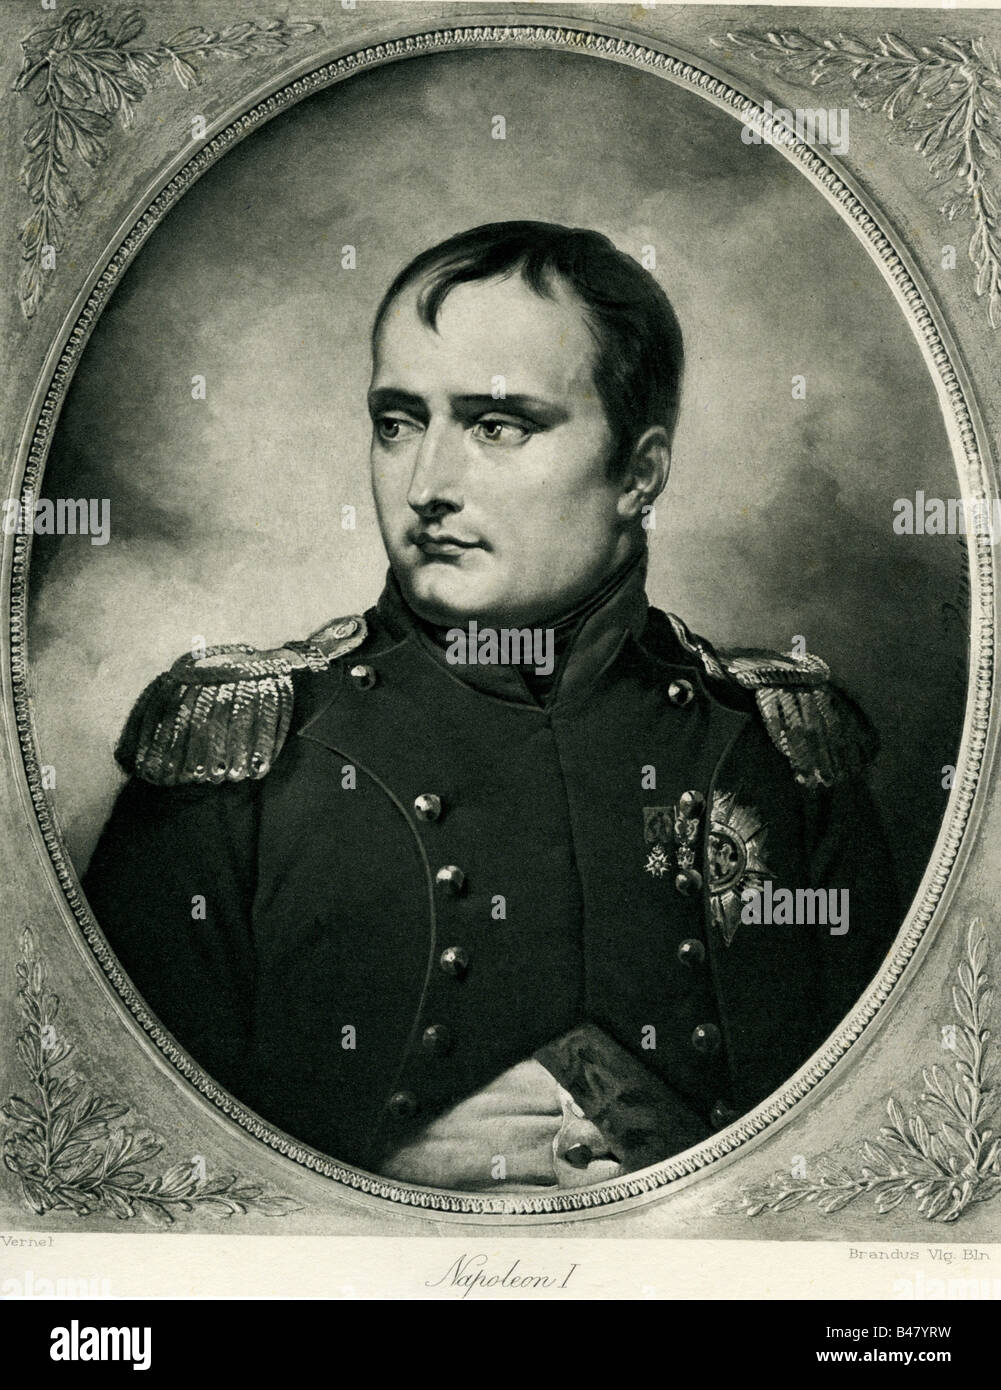 Napoleon I, 15.8.1769 - 5.5.1821, Kaiser der Franzosen 1804-1815, Porträt, Tiefdruck nach Gemälde von Vernel, Jahrhundert, Artist's Urheberrecht nicht geklärt zu werden. Stockfoto